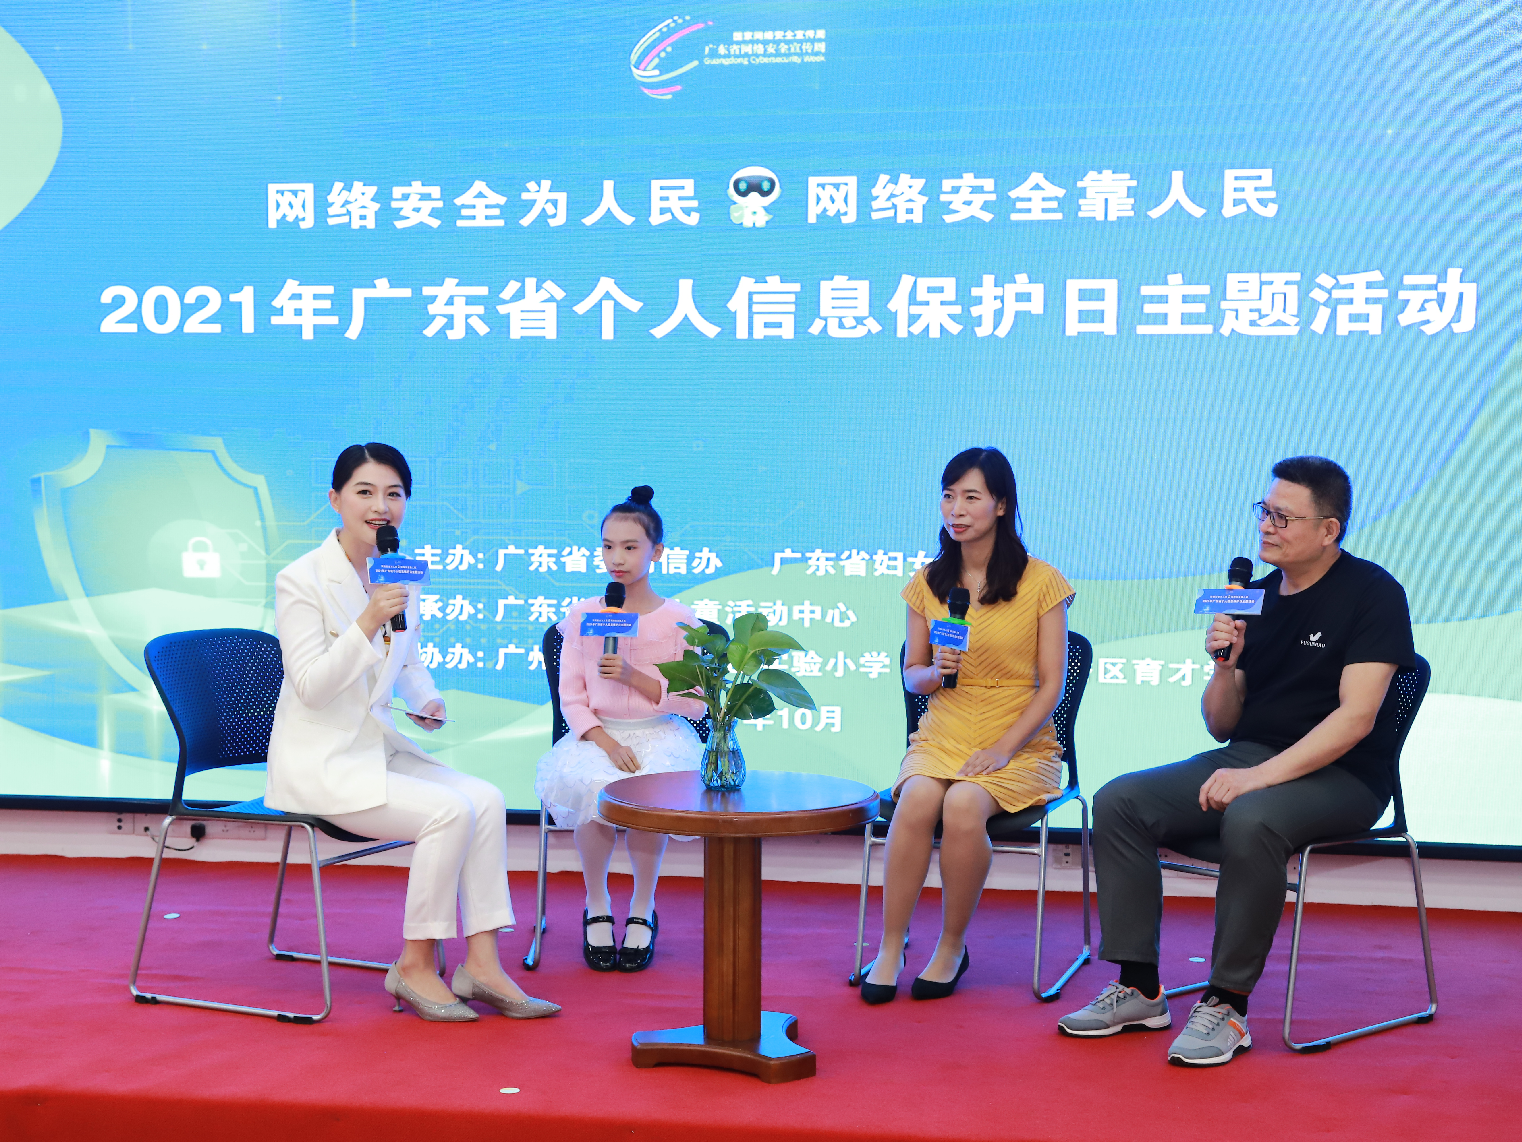 2021年广东省个人信息保护日主题活动在广州举行